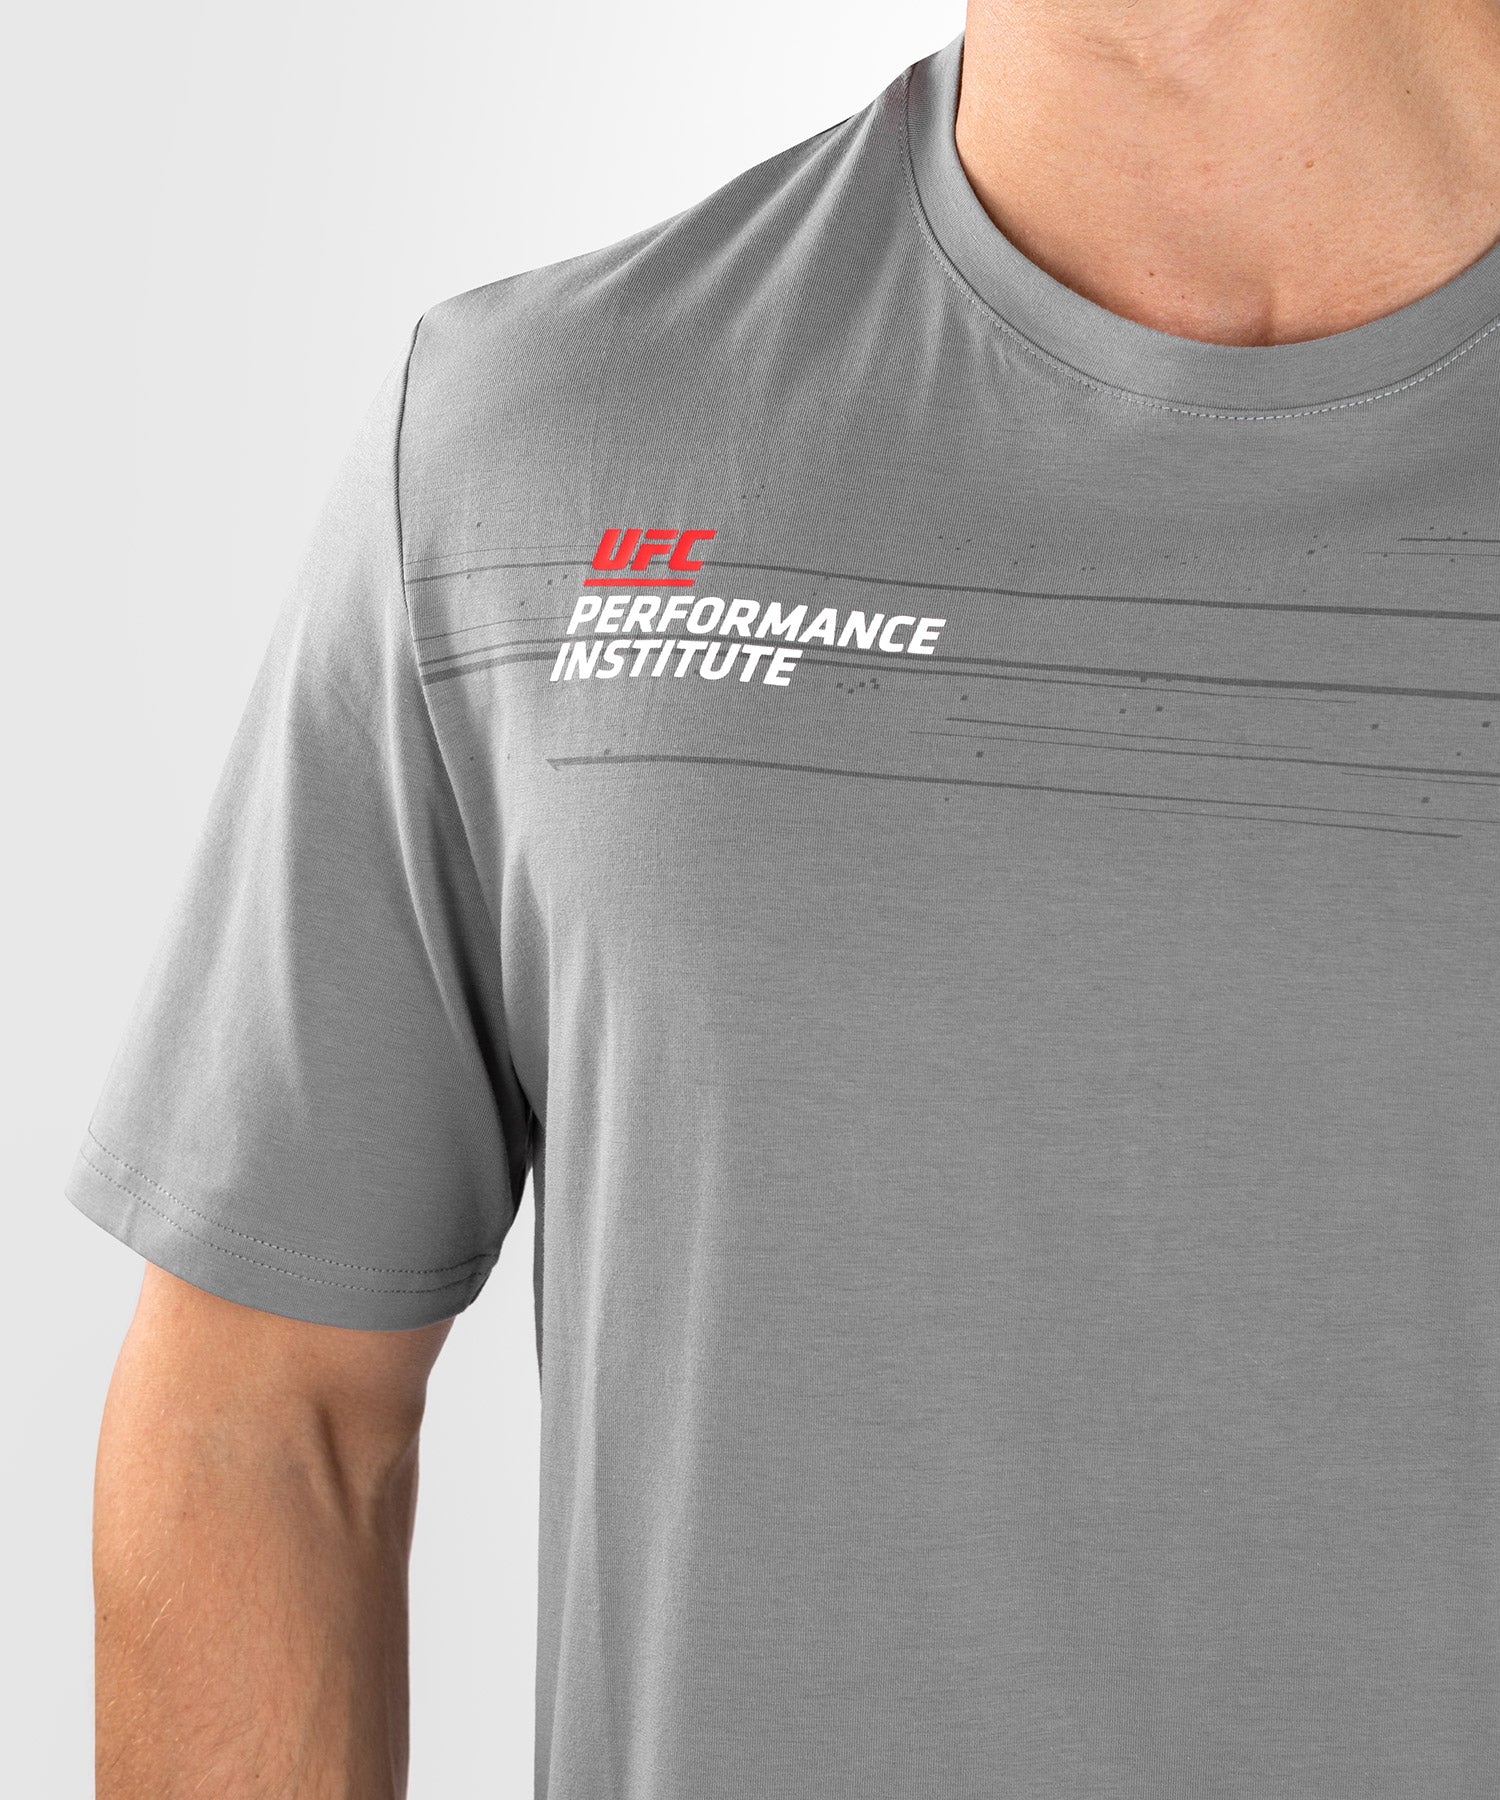 T-Shirt Homme UFC Venum Performance Institute 2.0 - Gris - T-shirts